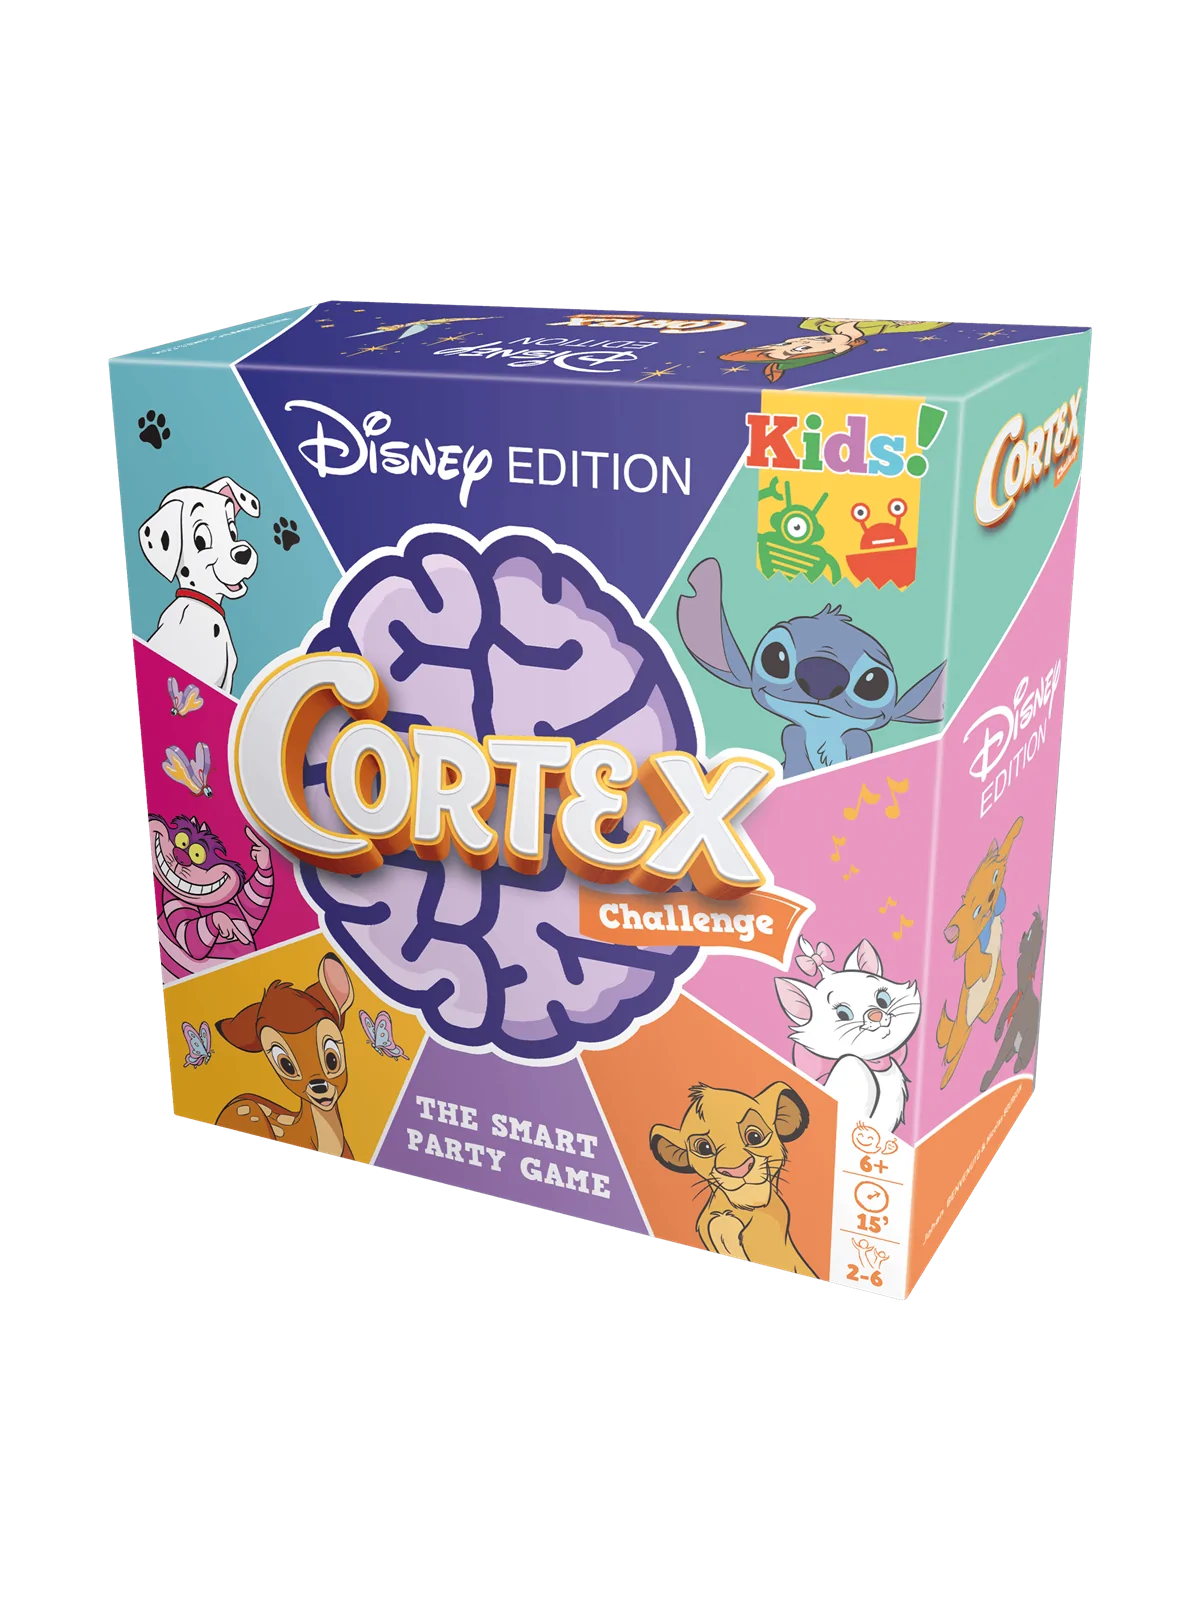 Comprar Cortex Kids Disney Edition barato al mejor precio 17,99 € de Z